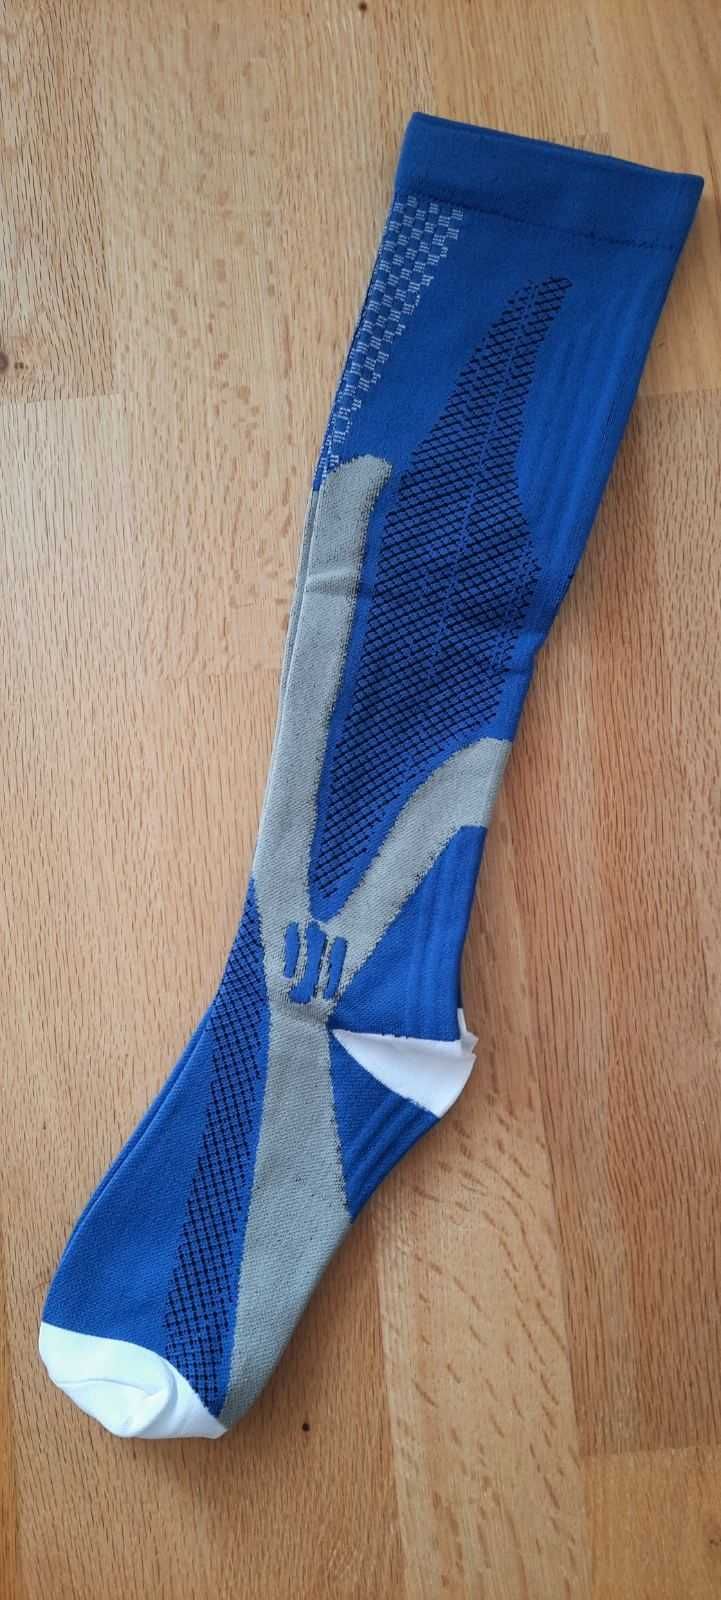 Компрессионные гетры для бега трейла беговые компресійні бігові носки